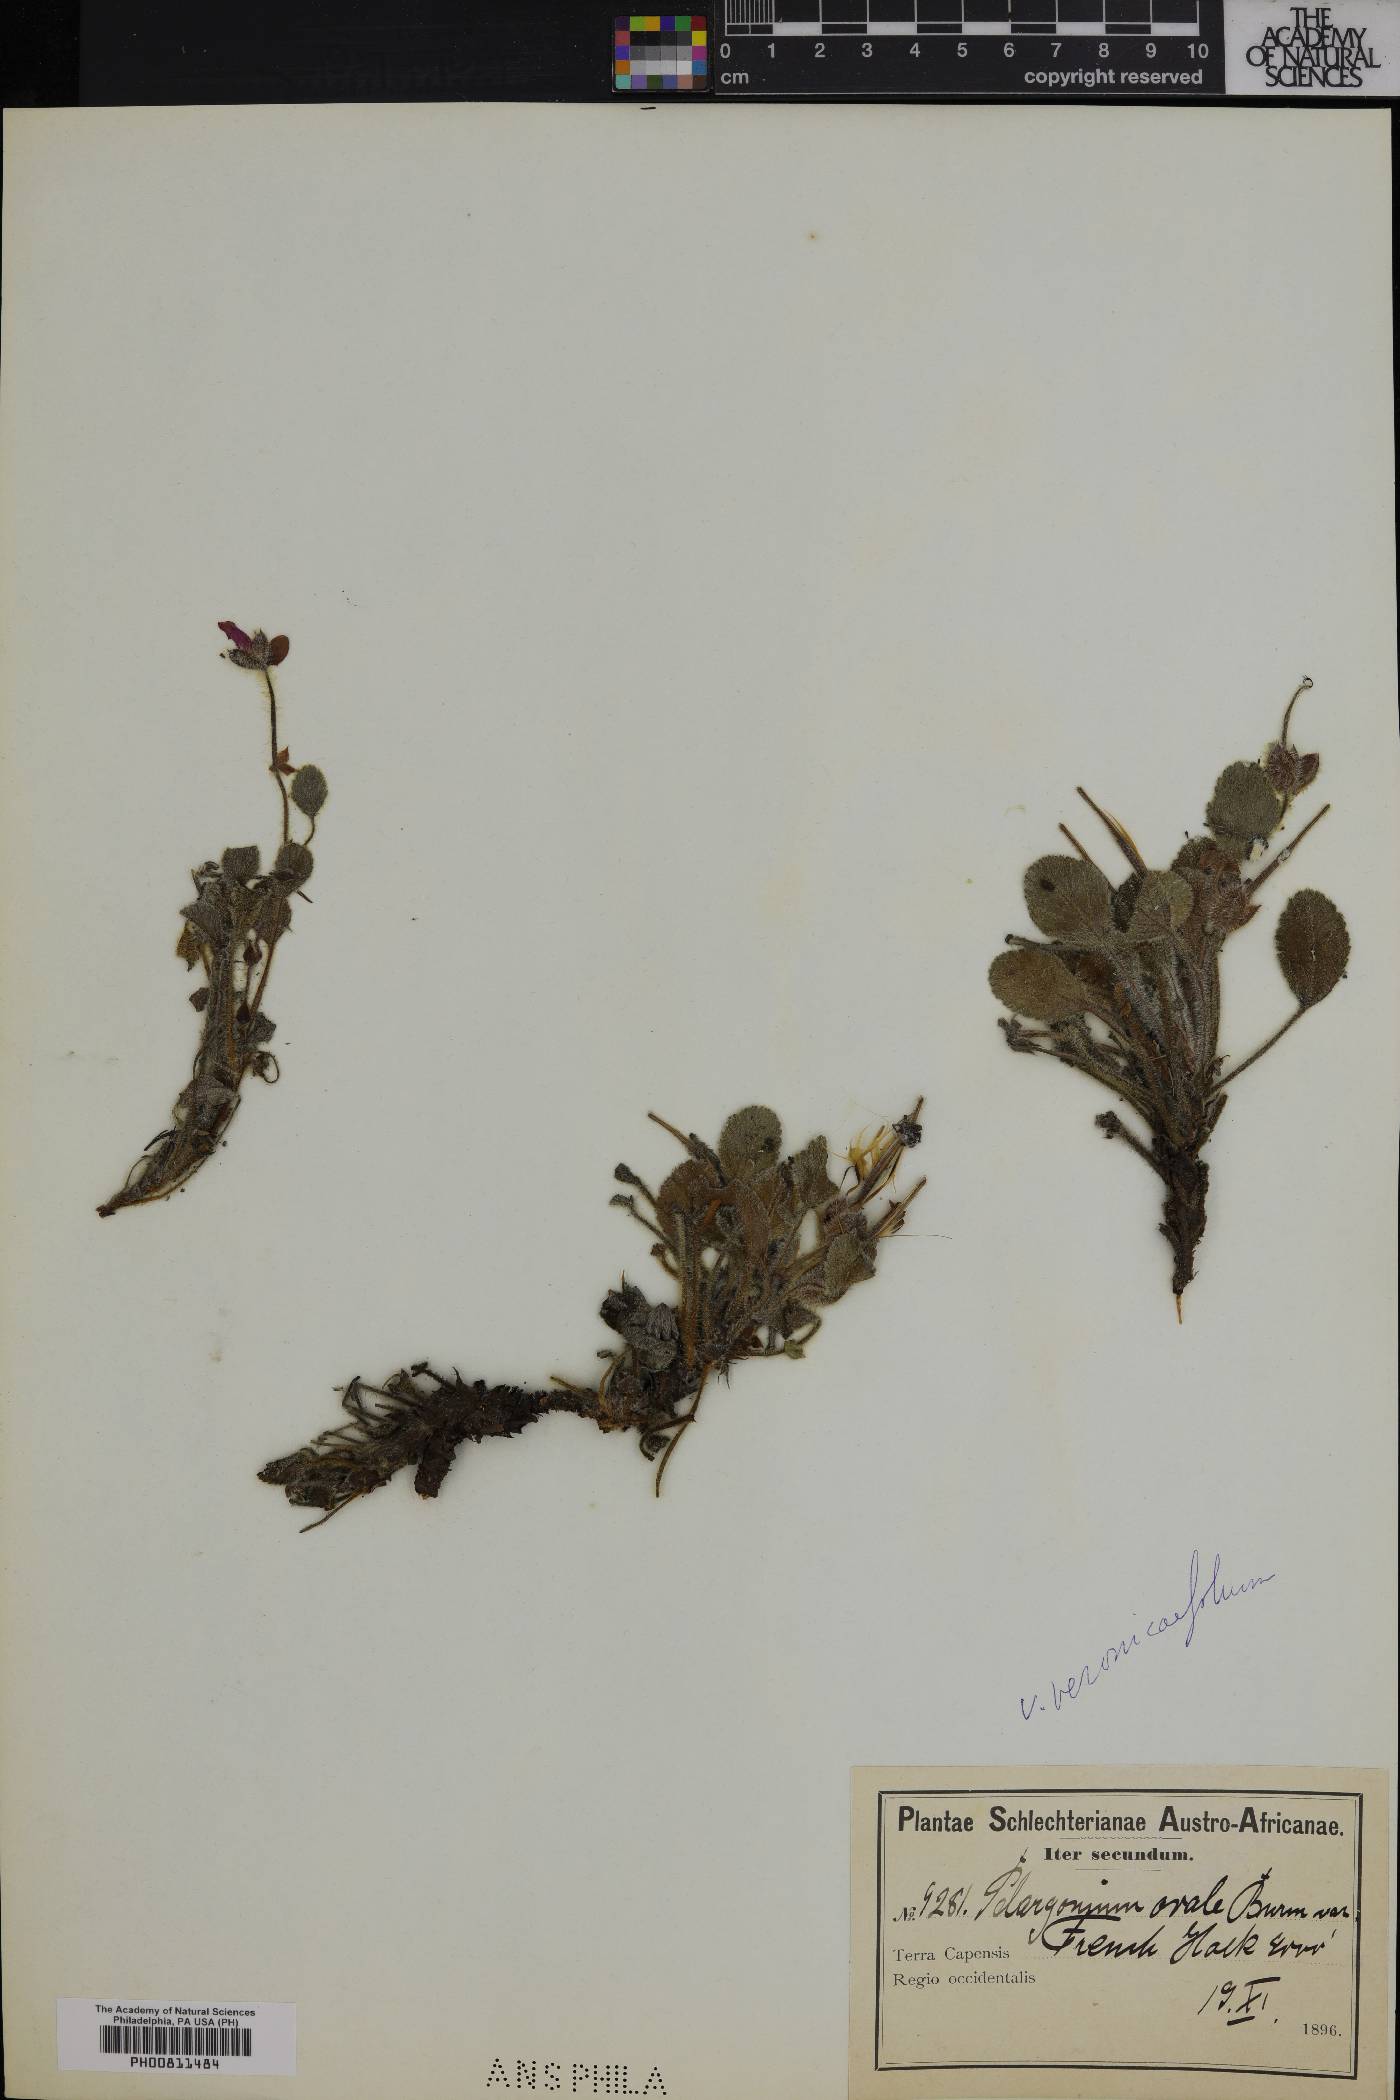 Pelargonium ovale image